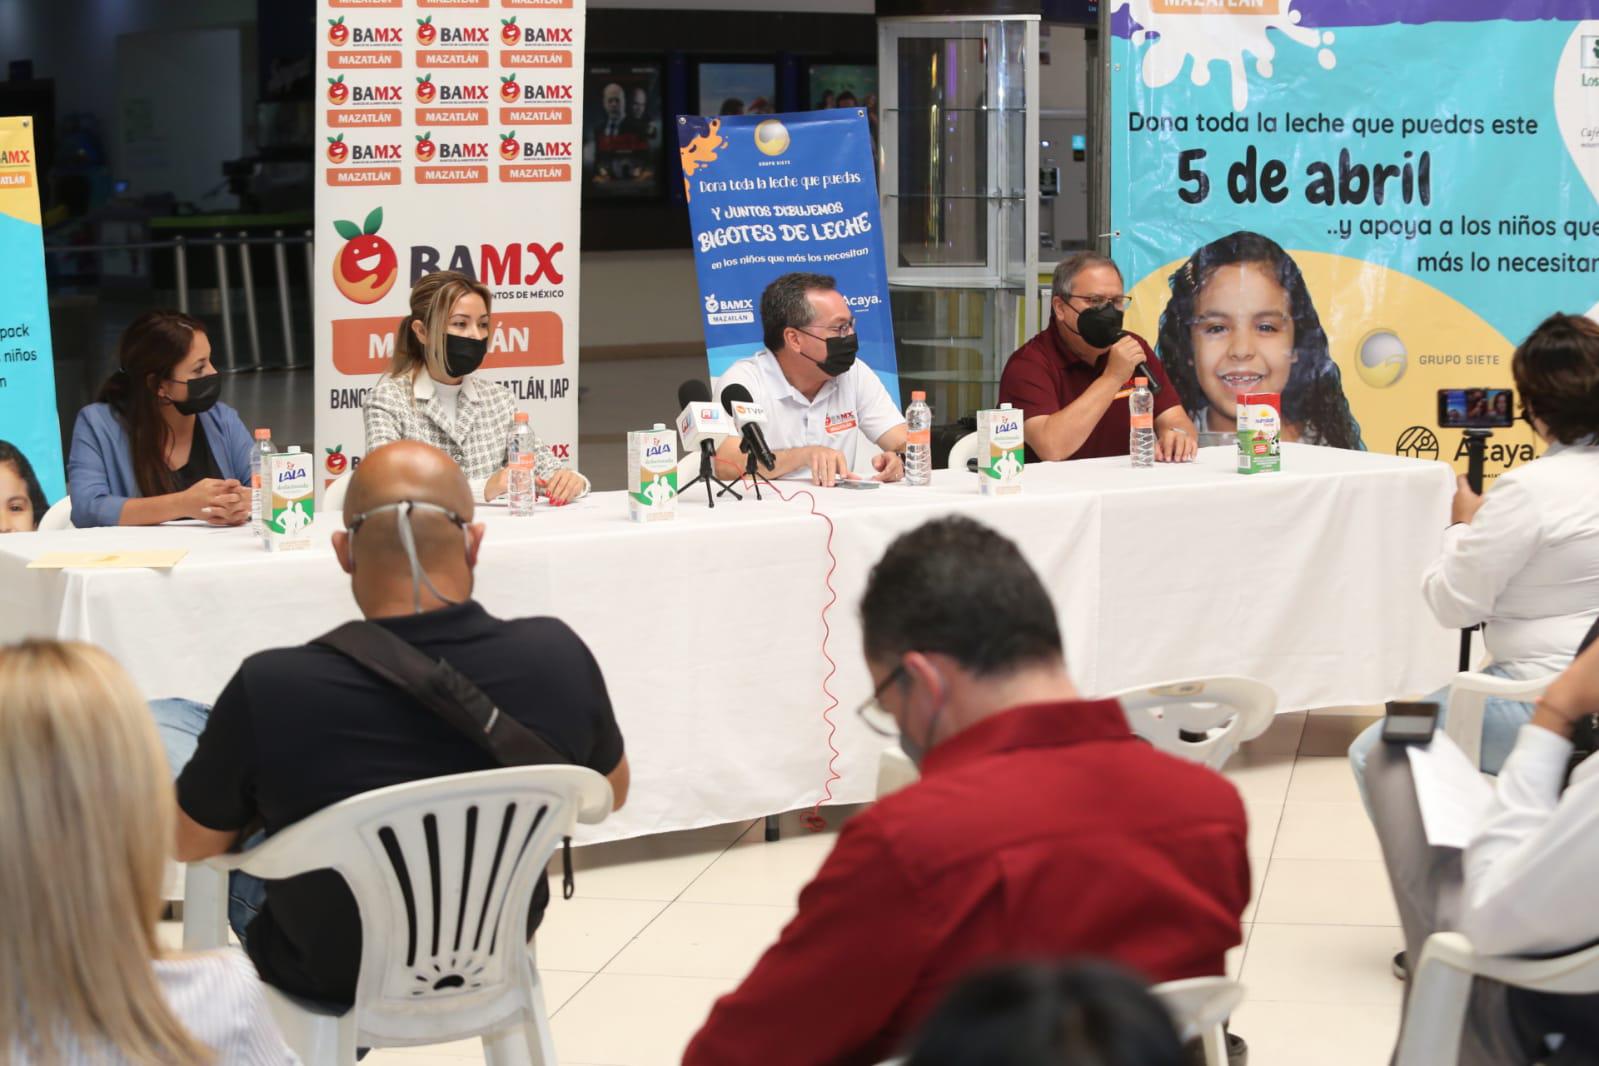 $!Invitan a donar leche para población vulnerable del sur de Sinaloa en campaña ‘bigotes de leche’